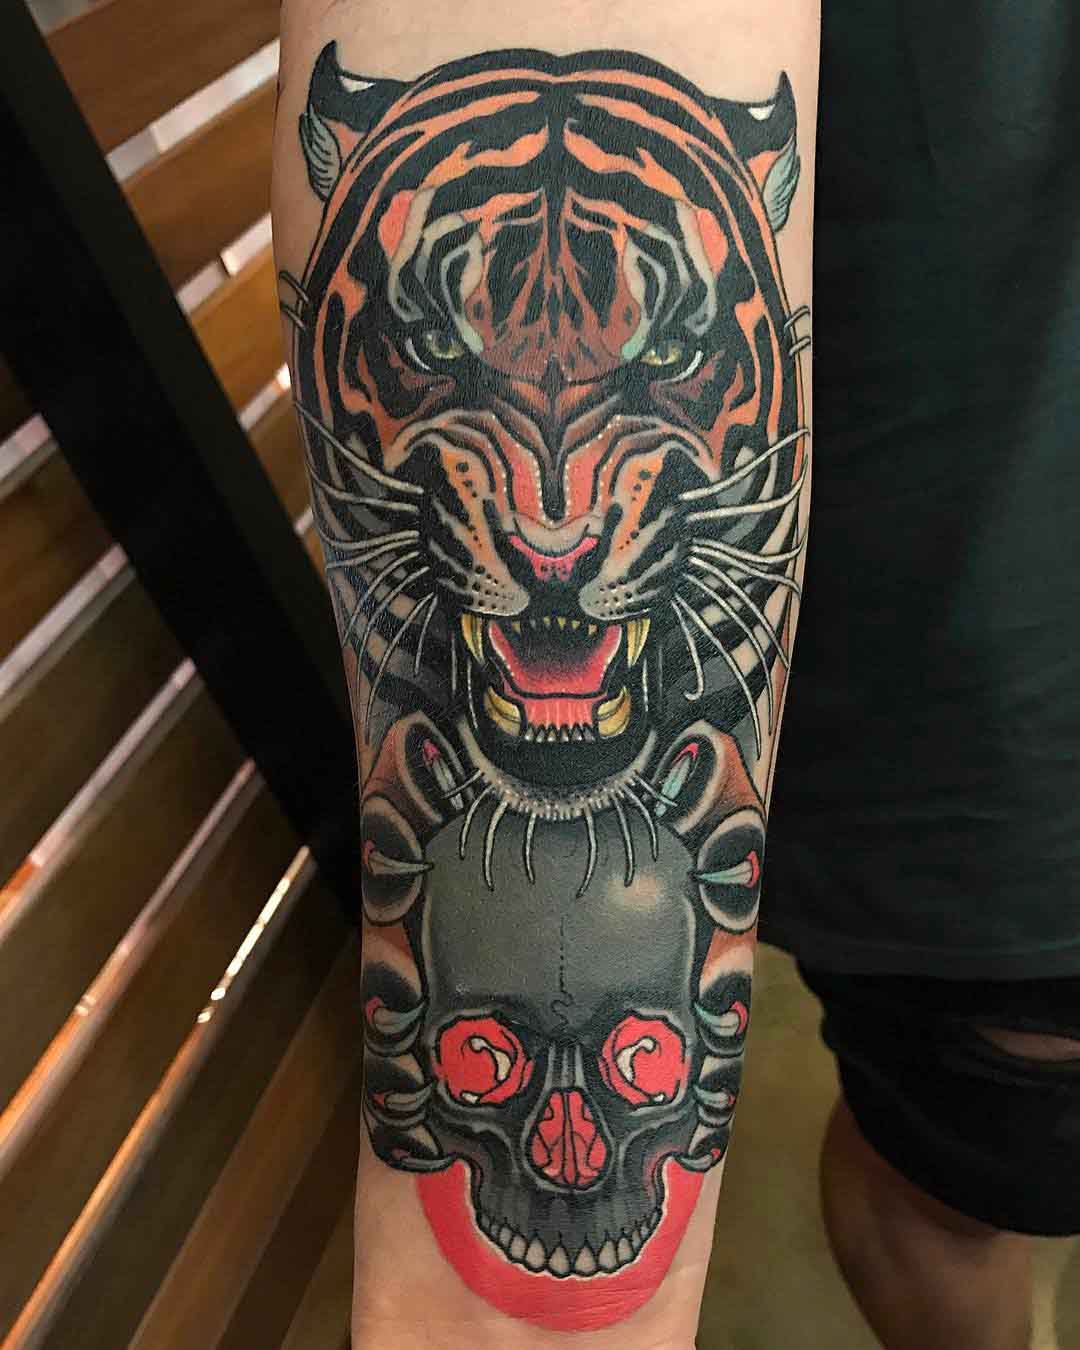 Tiger and Skull Tattoo - Best Tattoo Ideas Gallery